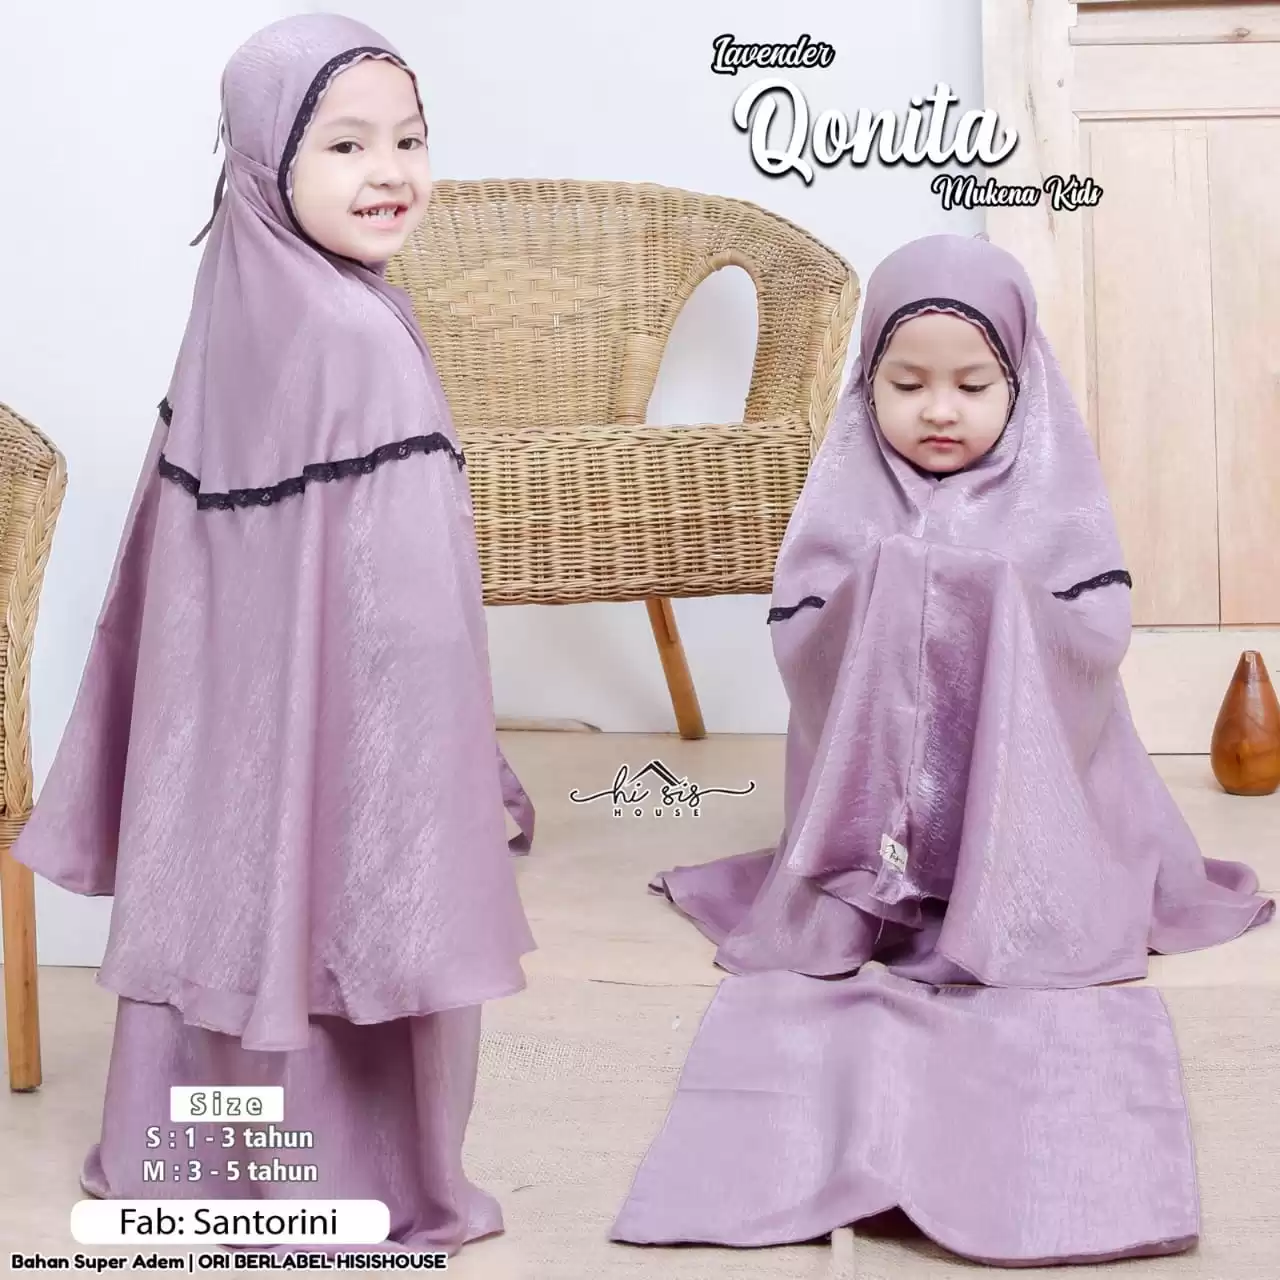 Grosir Hi Sis Qonita Mukena Kids Lavender Lampung